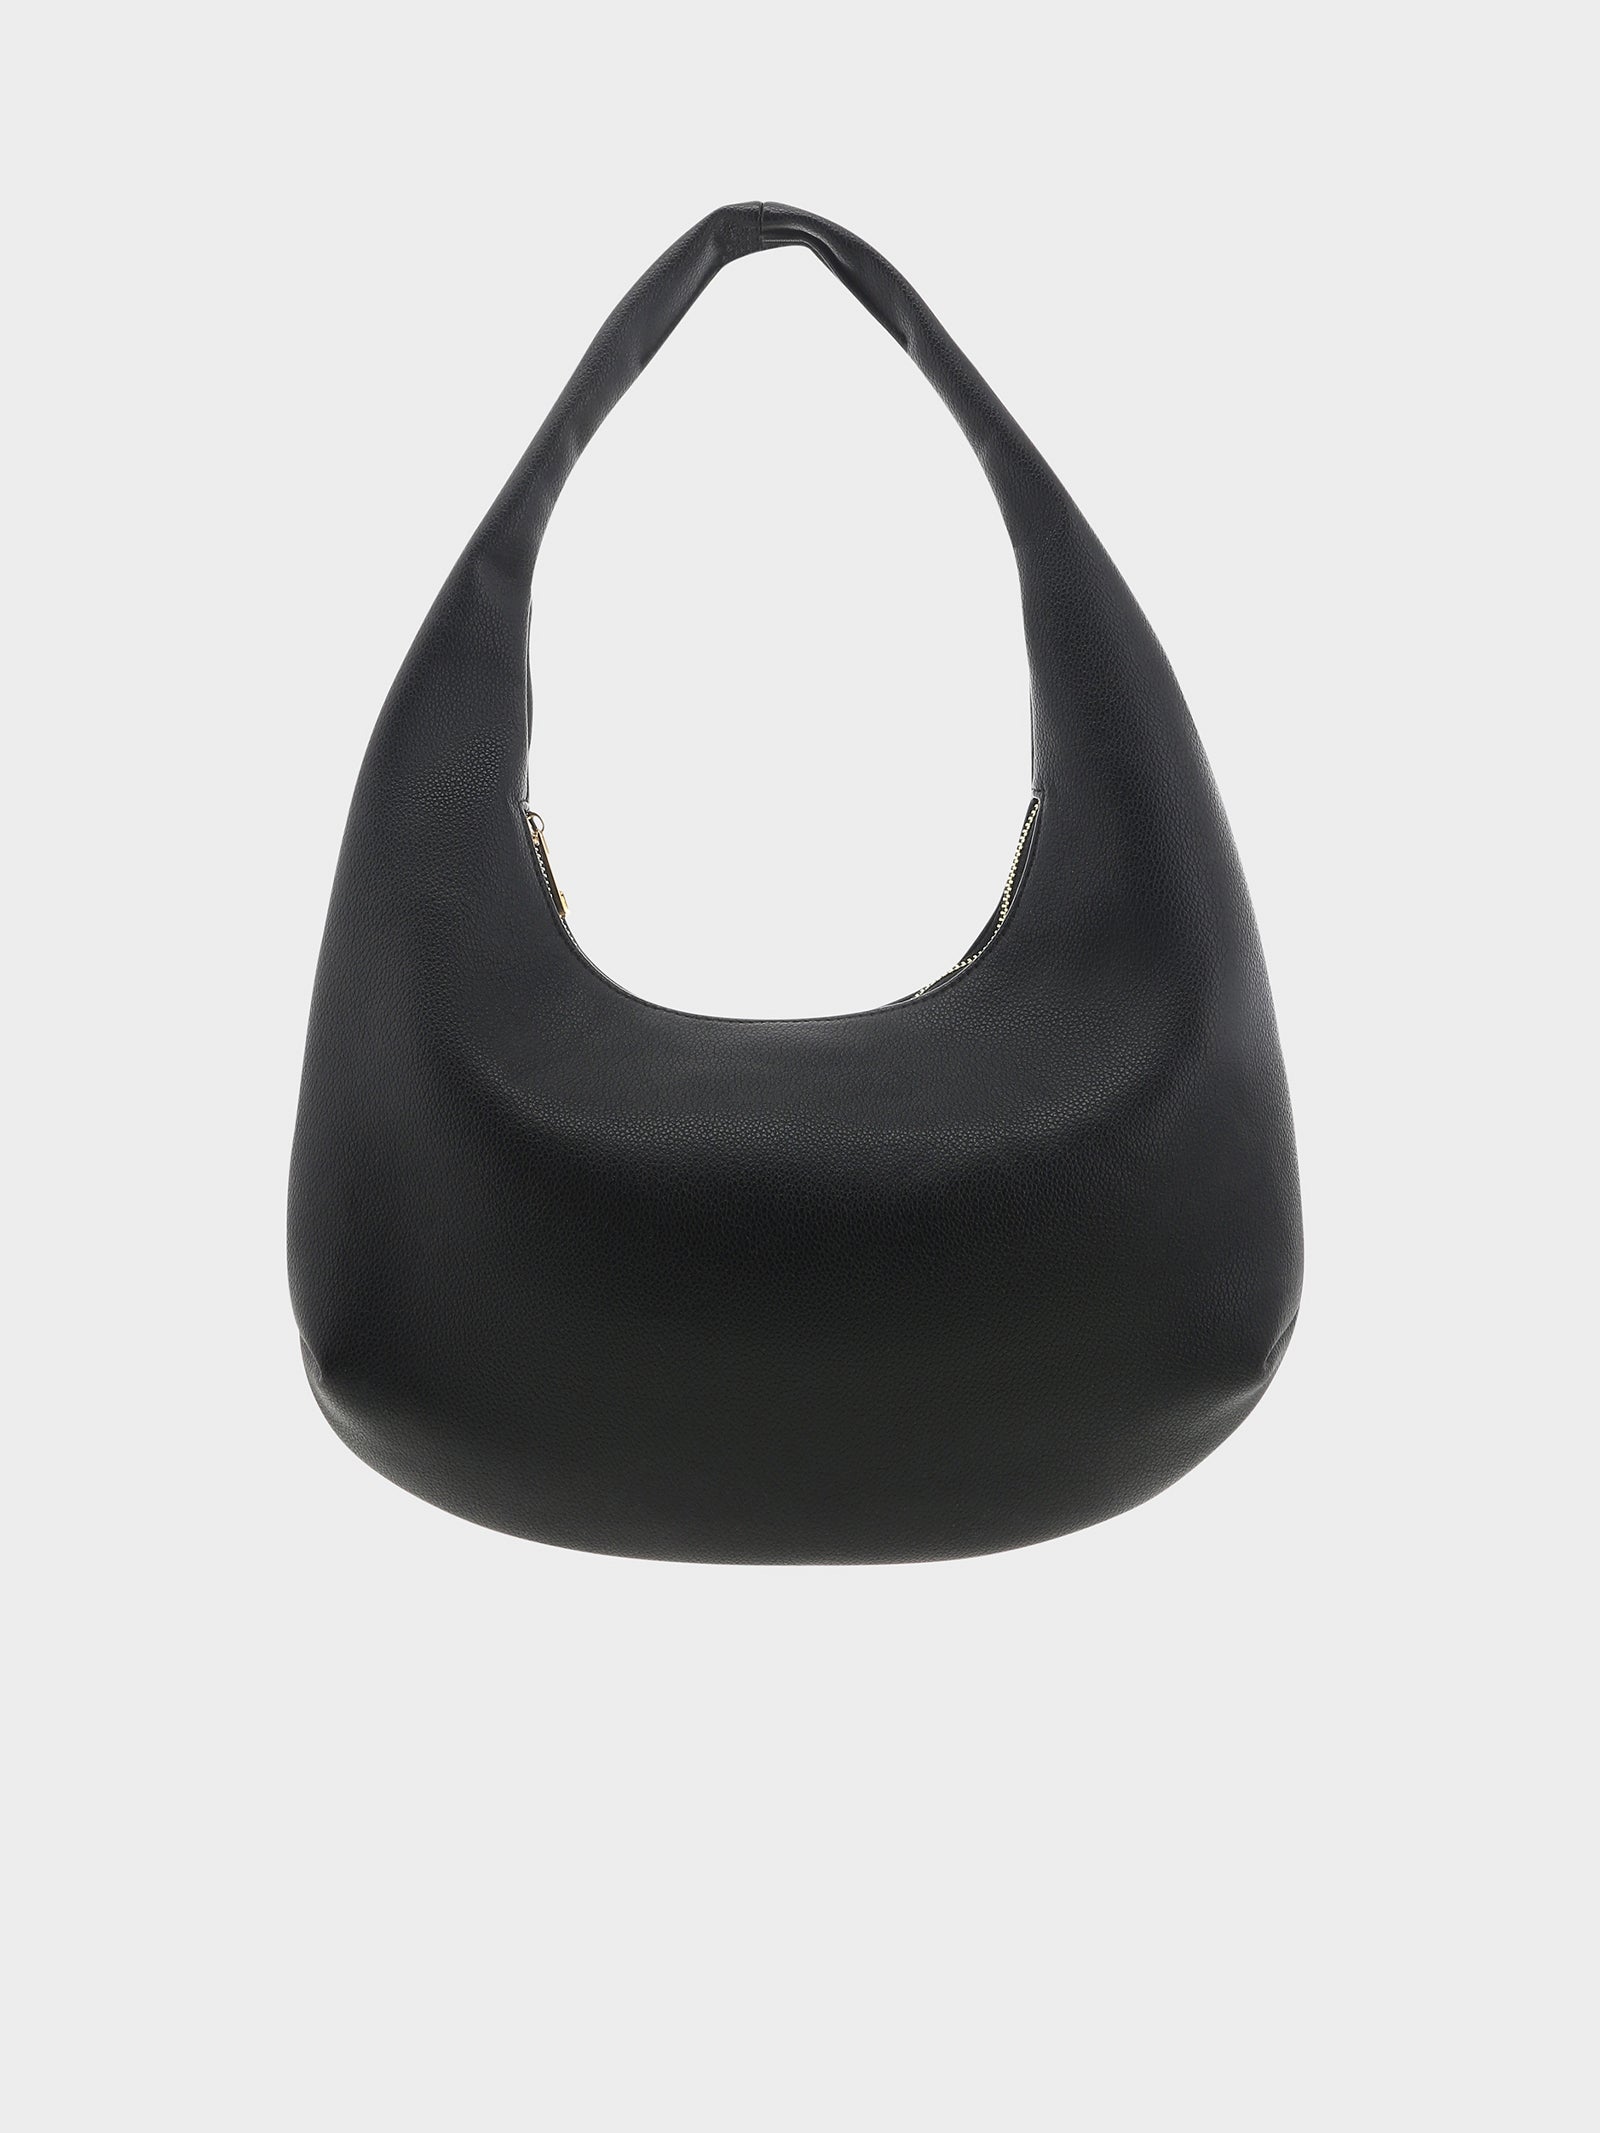 Sandy Shoulder Bag in Black - Glue Store